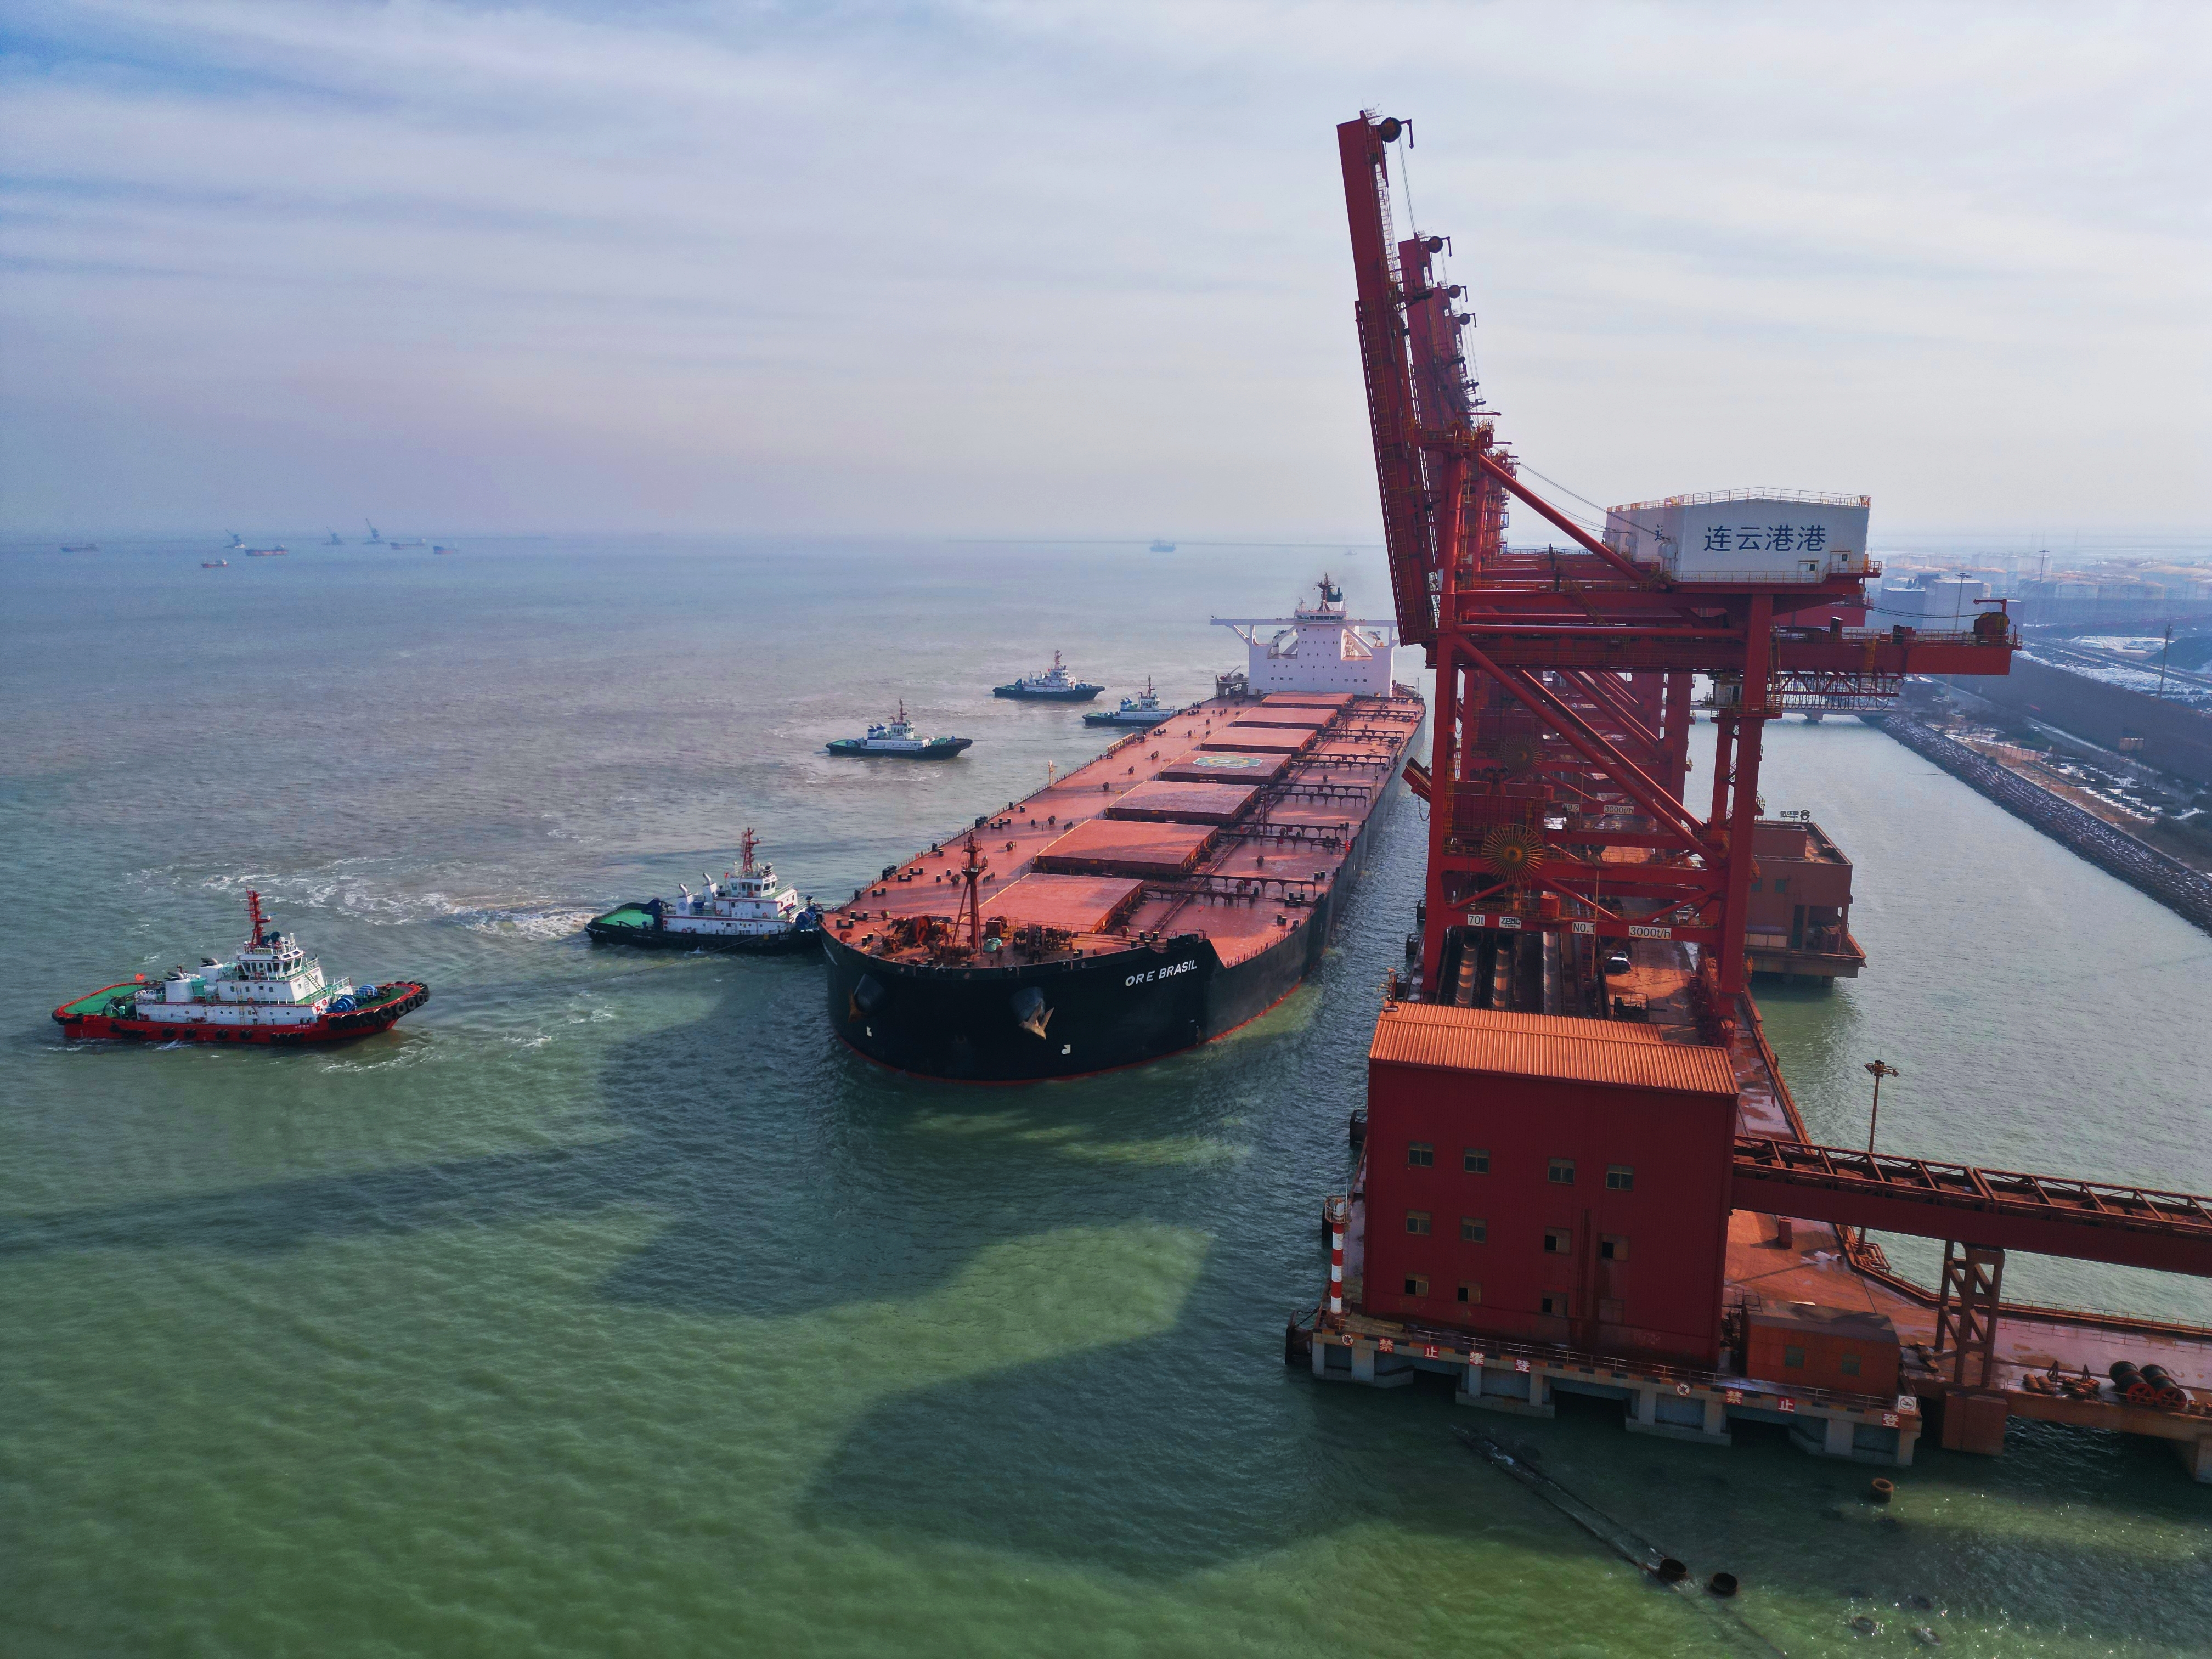 这是连云港乃至江苏海港首次靠泊40万吨级满载船,为港口提升服务能级